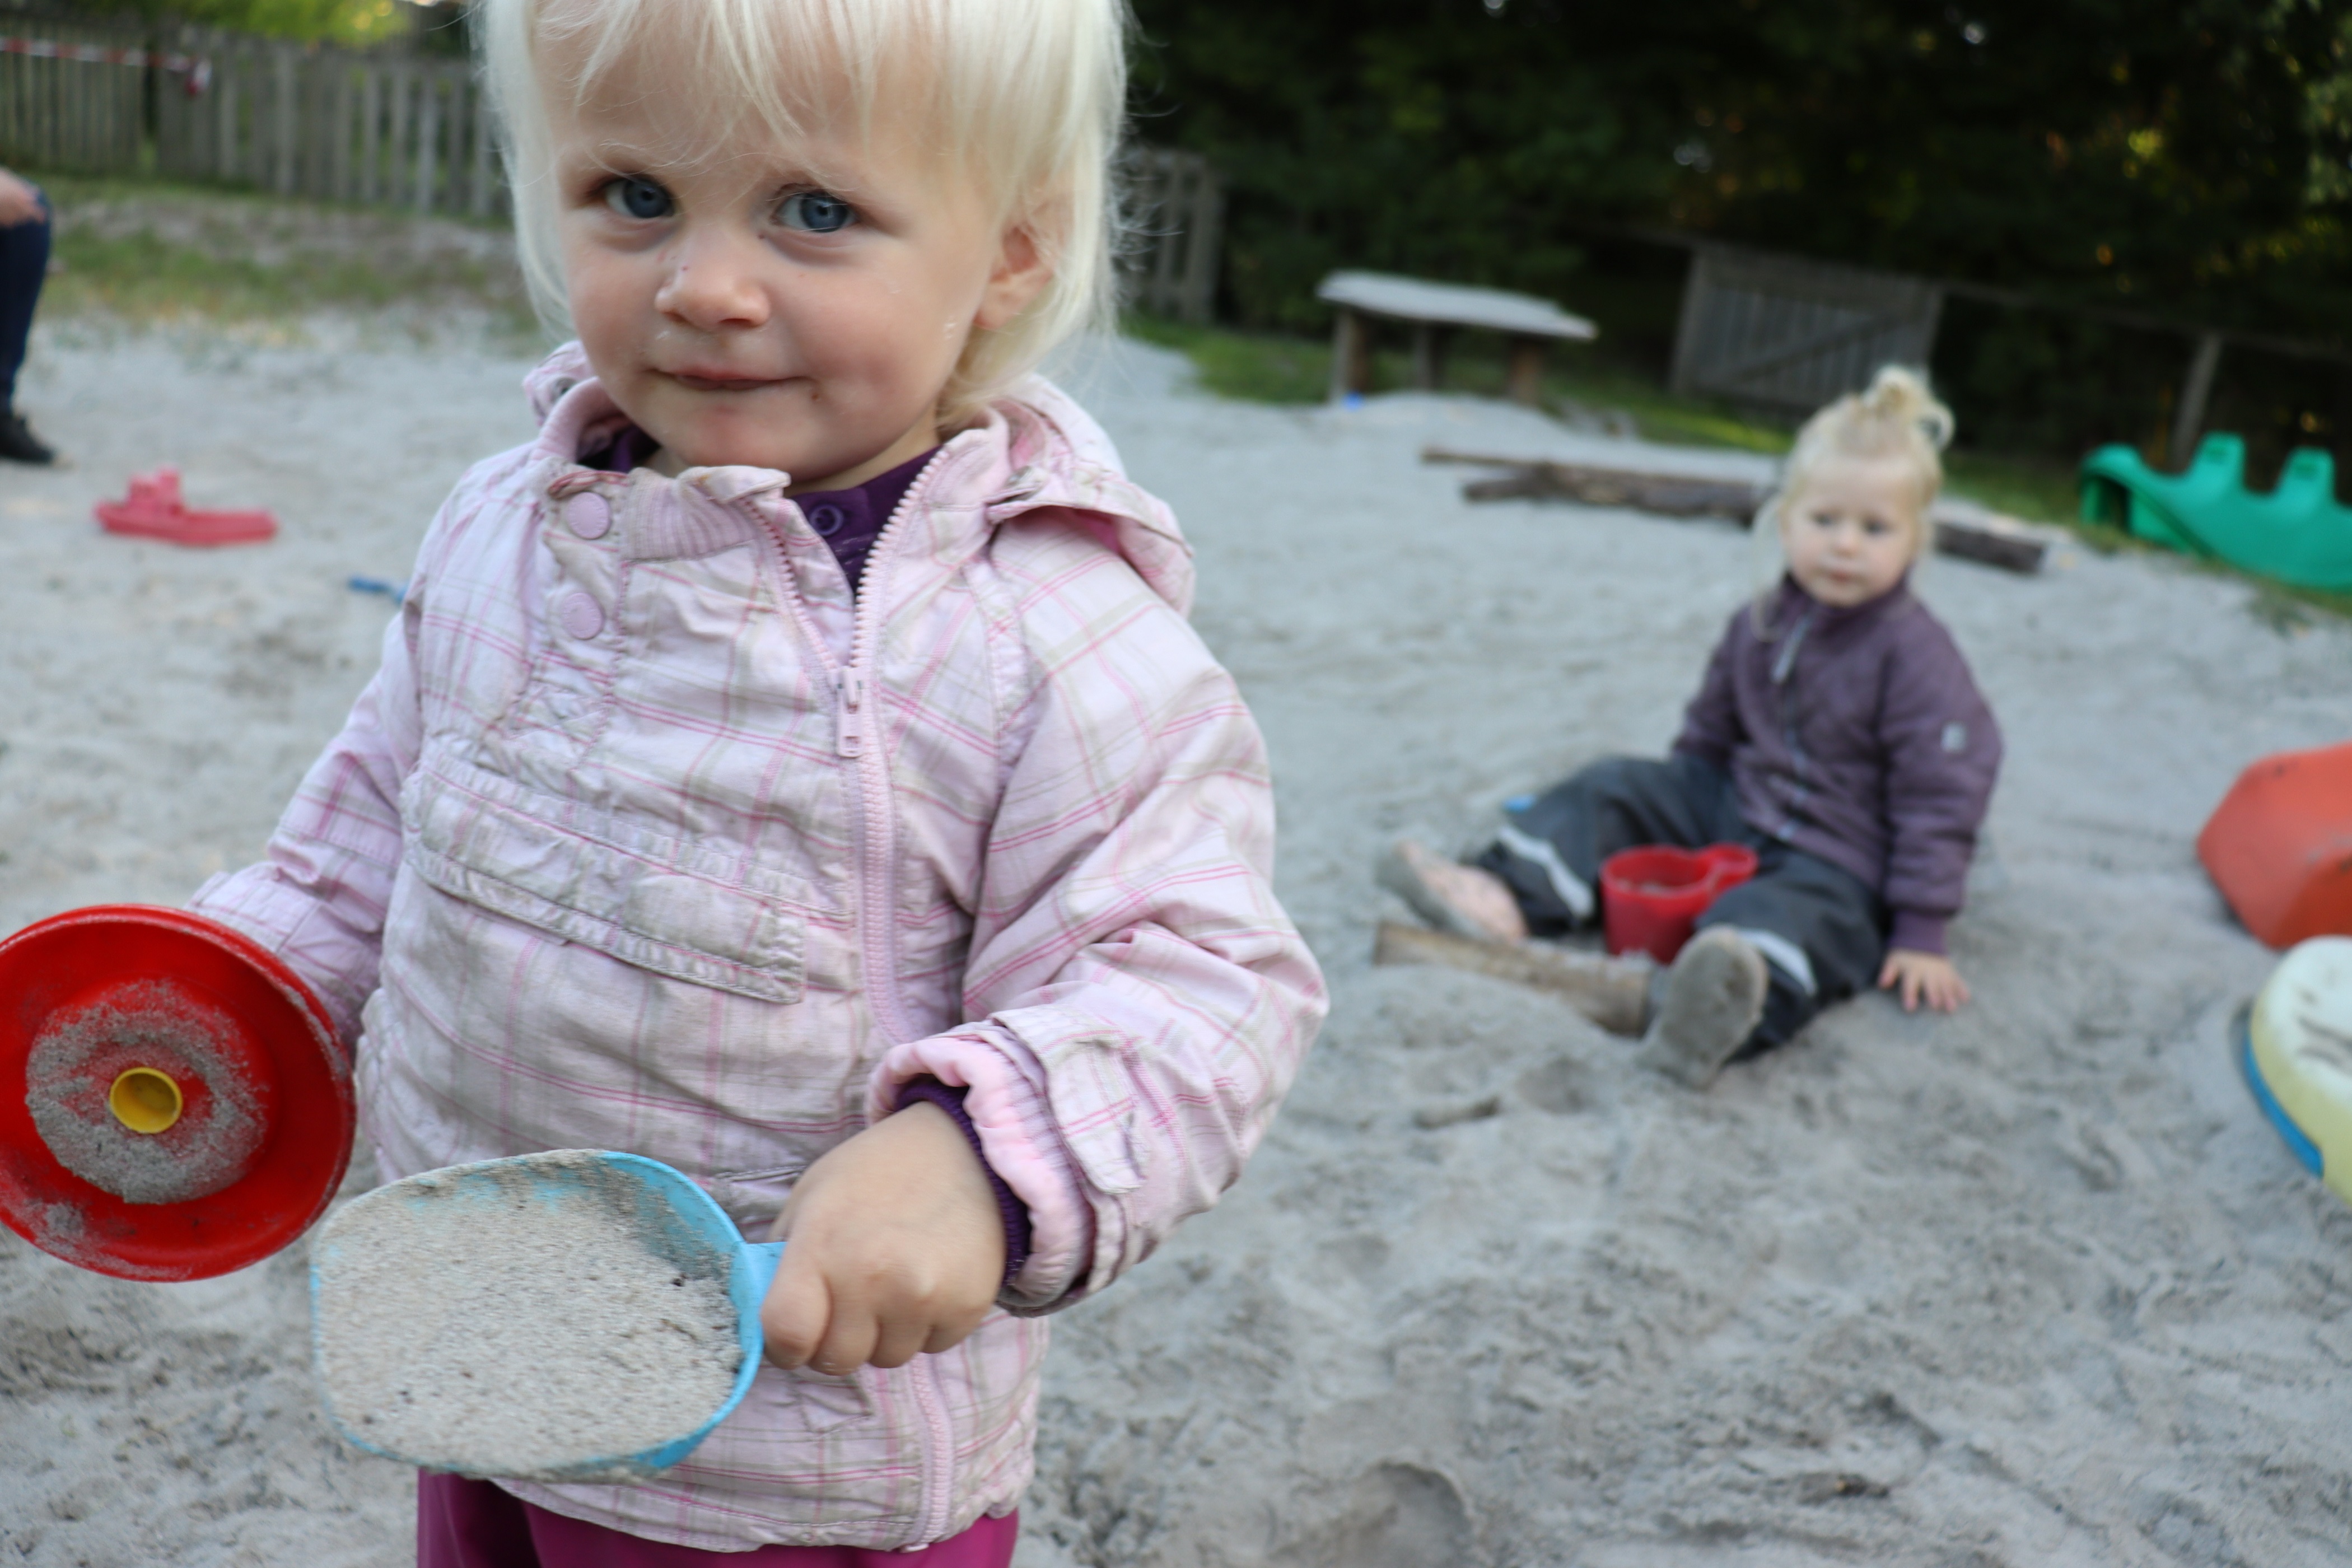 Vuggestuens legeplads, hvor en lille pige står med sandkasse skovl og gryde